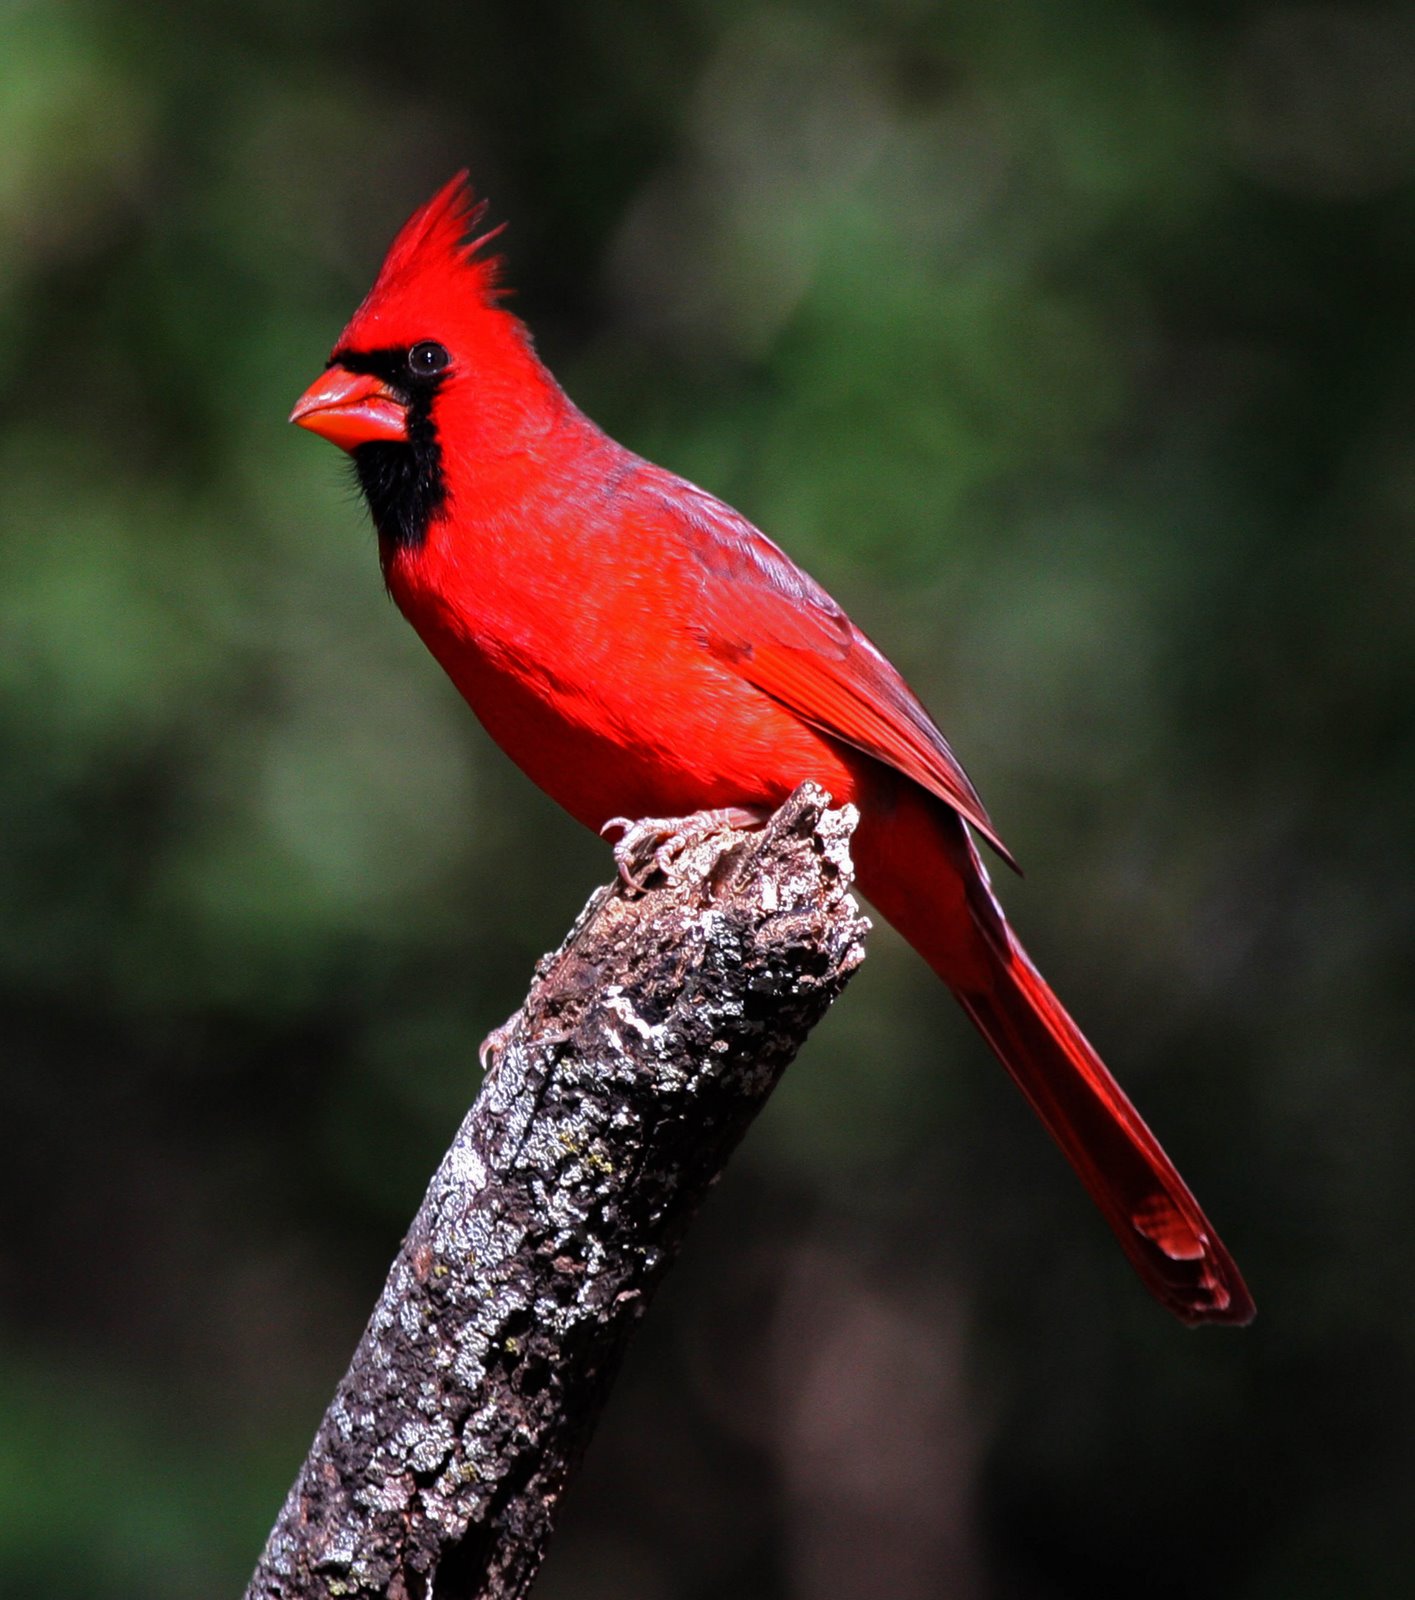  cardinalscardinal birdflying cardinalsweet cardinalsred cardinal 1415x1600